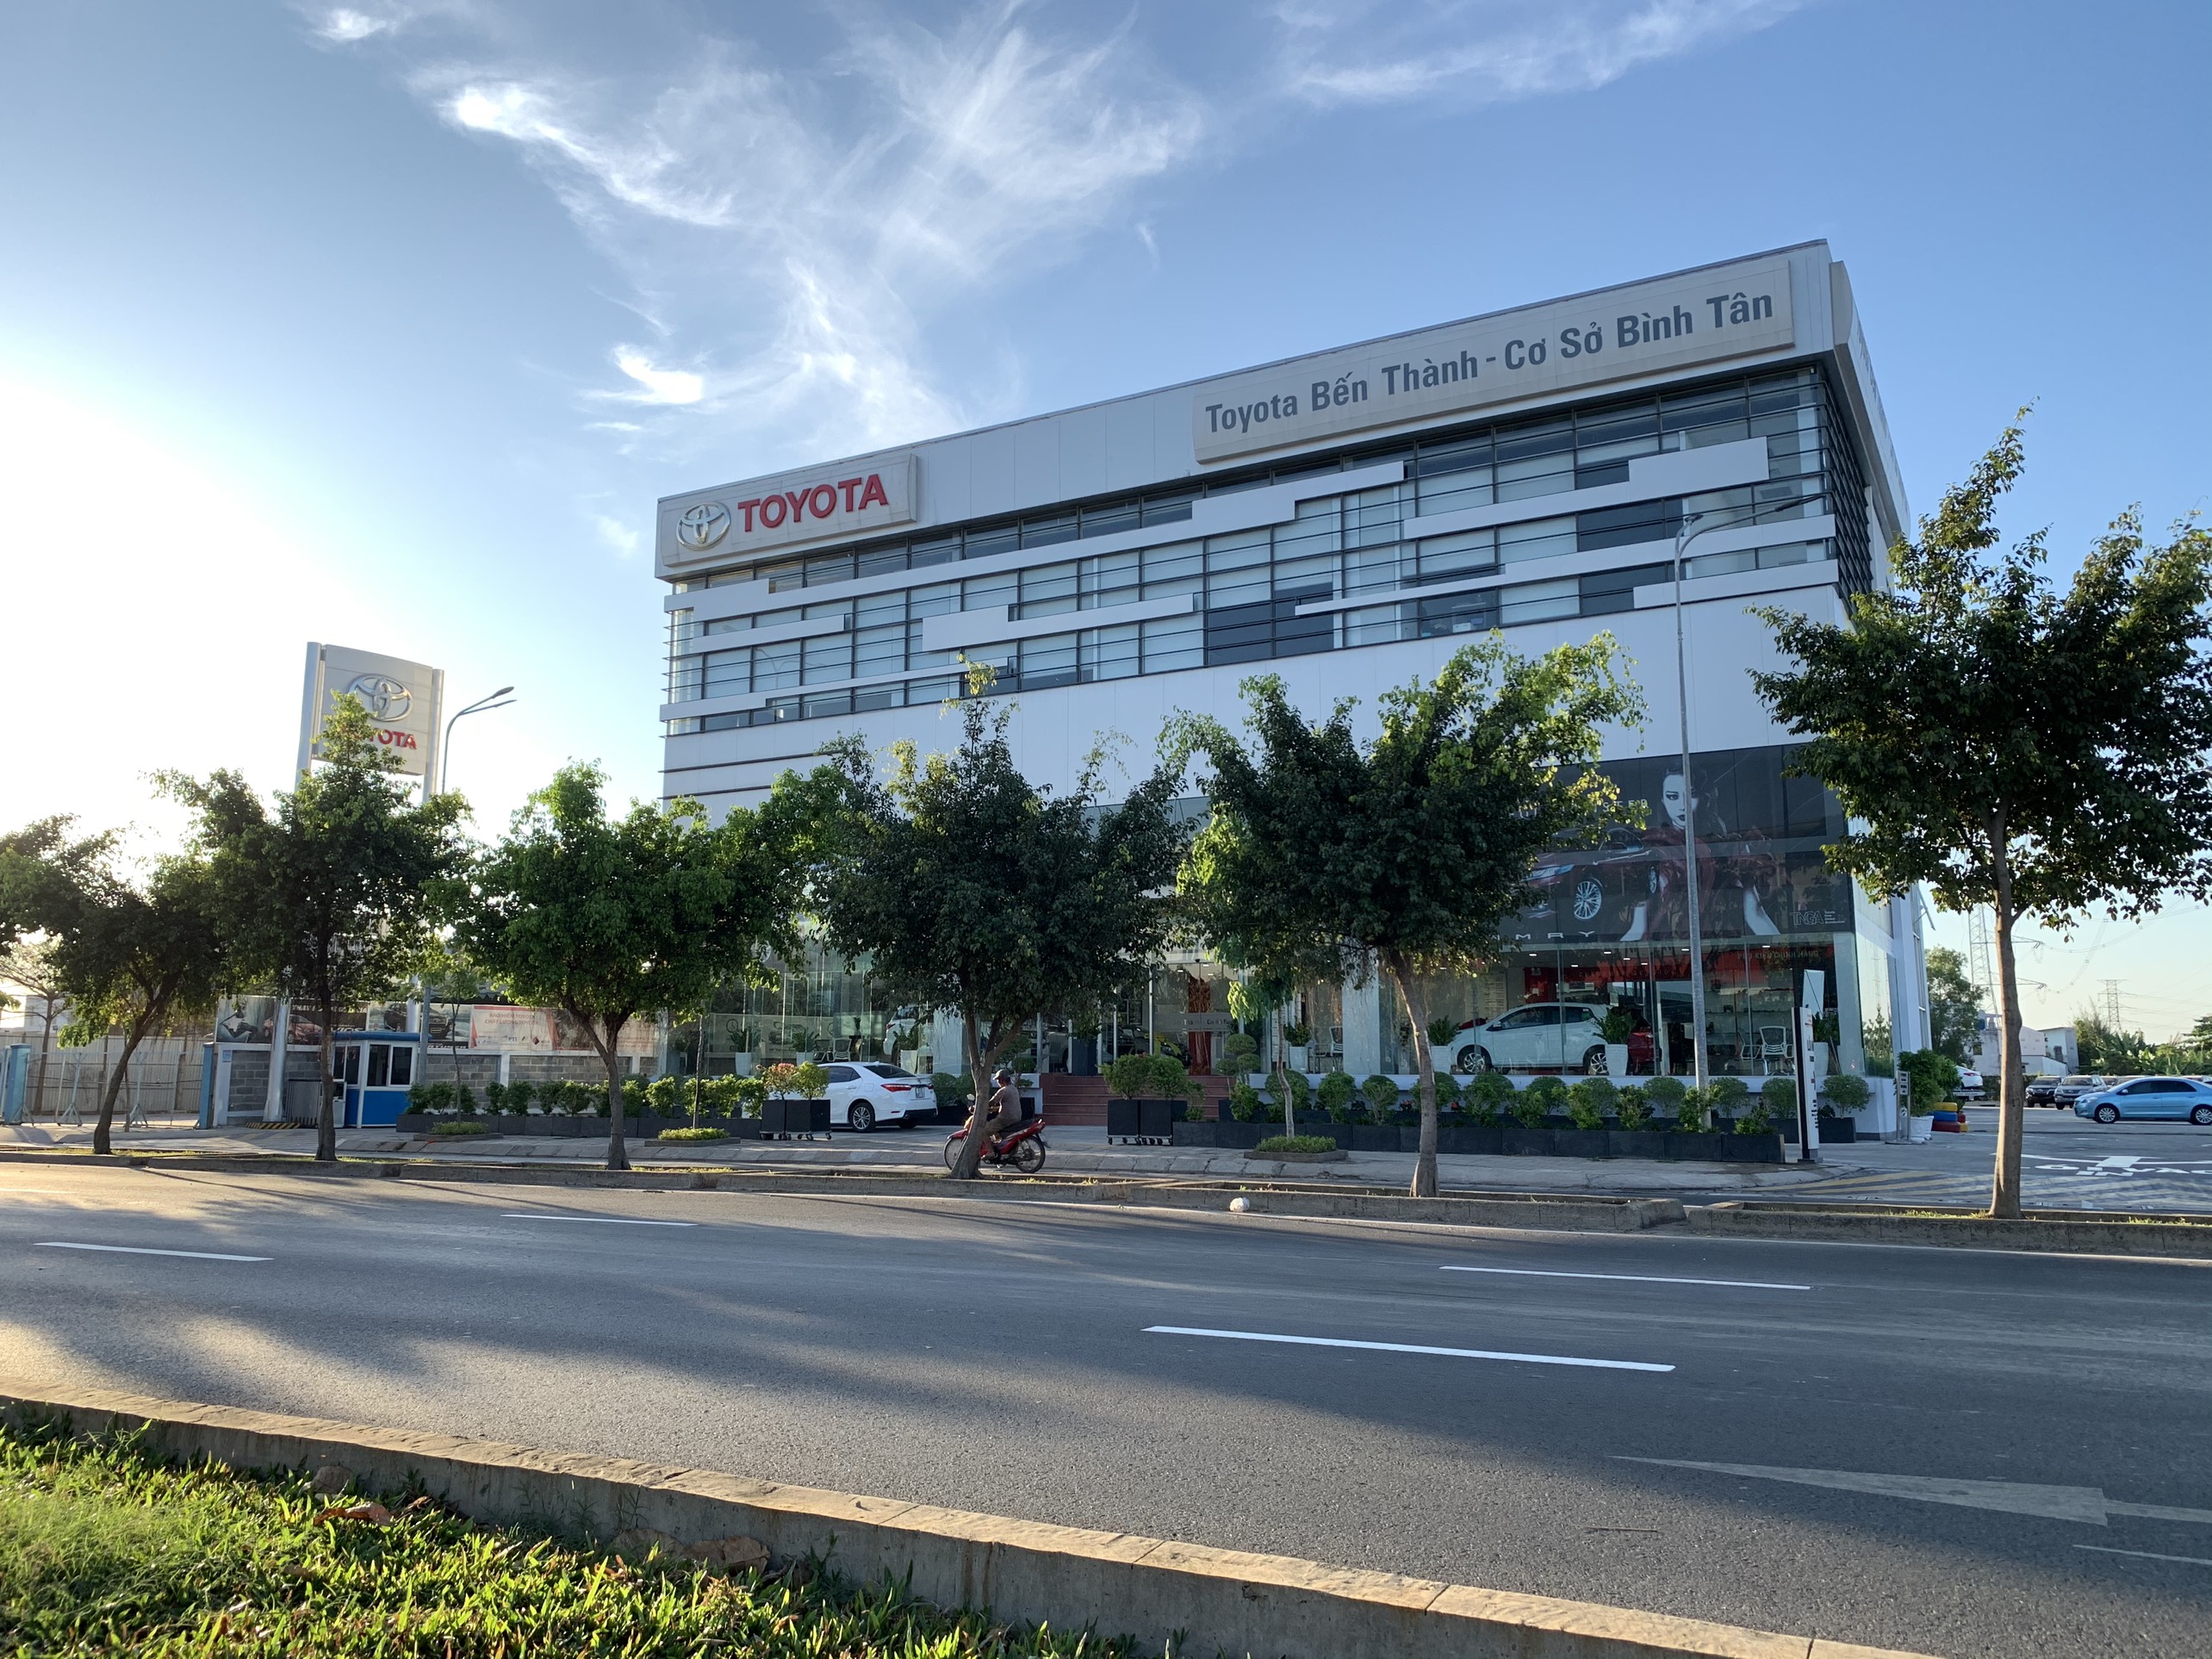 Toyota Bến Thành Cơ Sở Bình Tân 0908.058.717 tọa lạc tại 2078 Võ Văn Kiệt , Bình Tân TPHCM